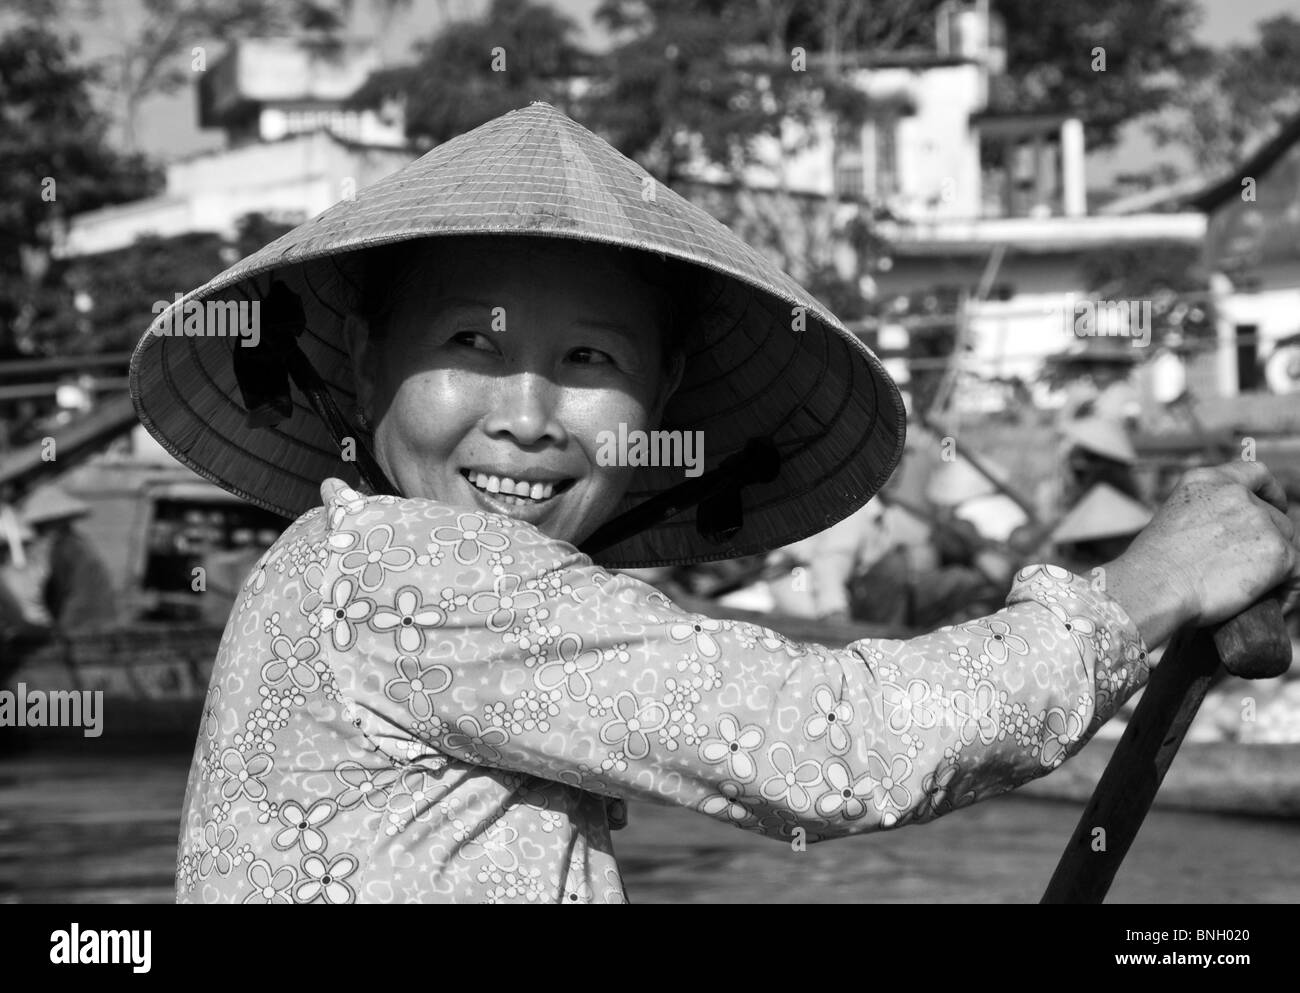 Locals, Mekong Delta, Vietnam Stock Photo